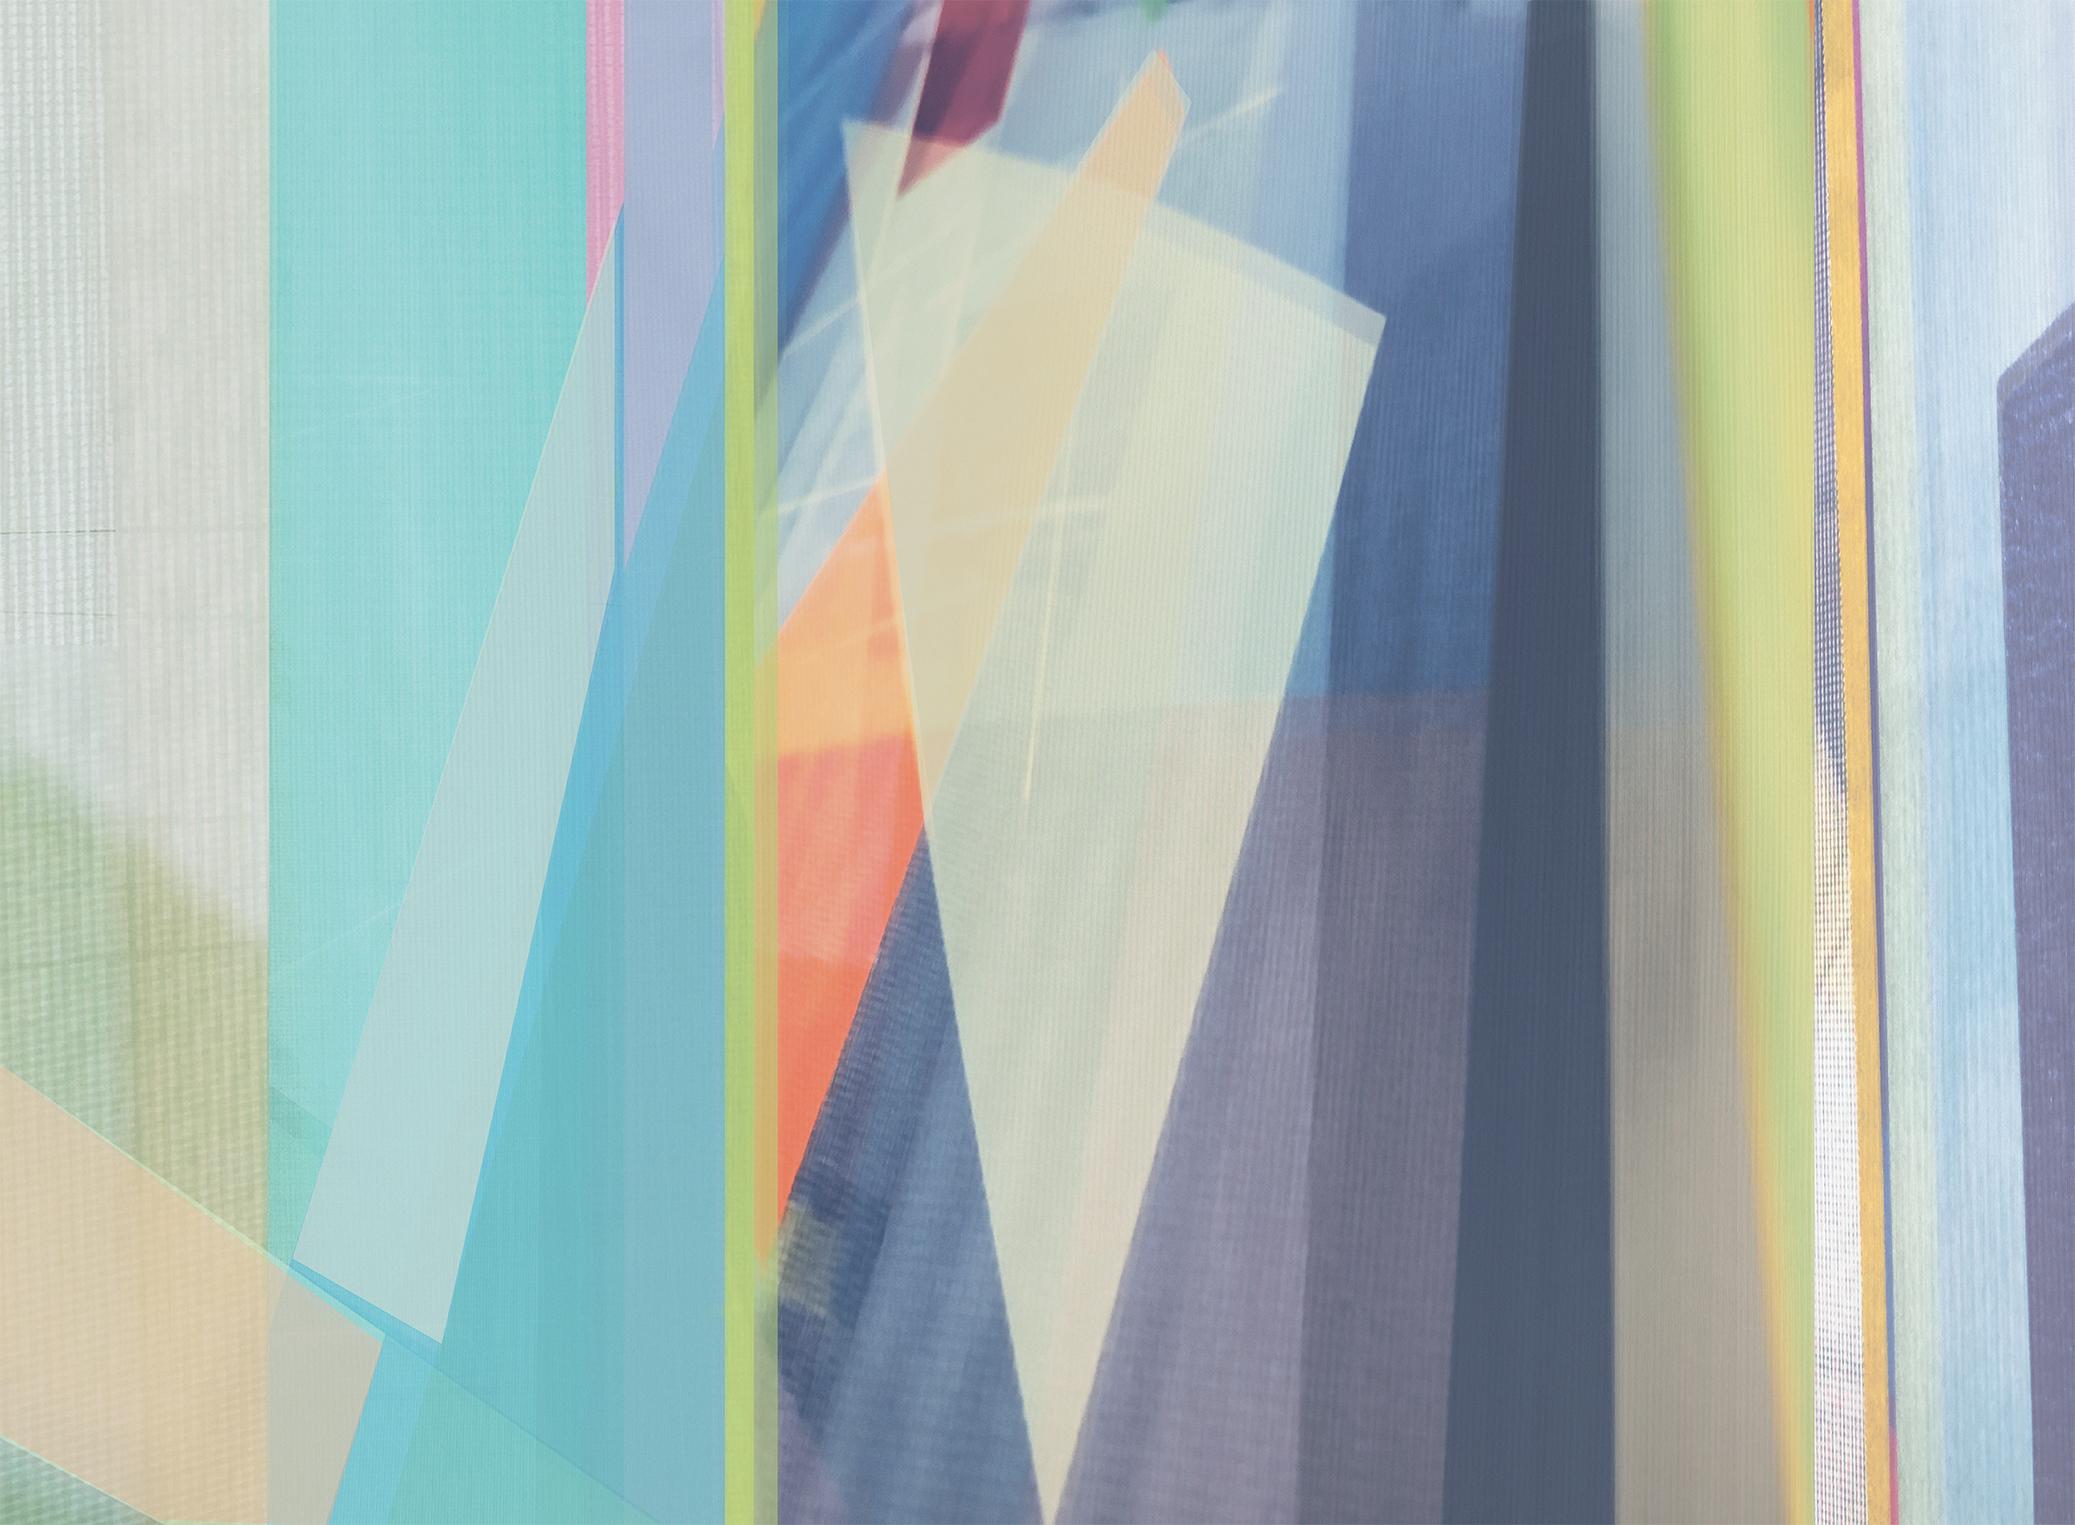 Abstract Photograph Monika Bravo - Parallel Fields #9. Photographie en couleur abstraite à tirage limité